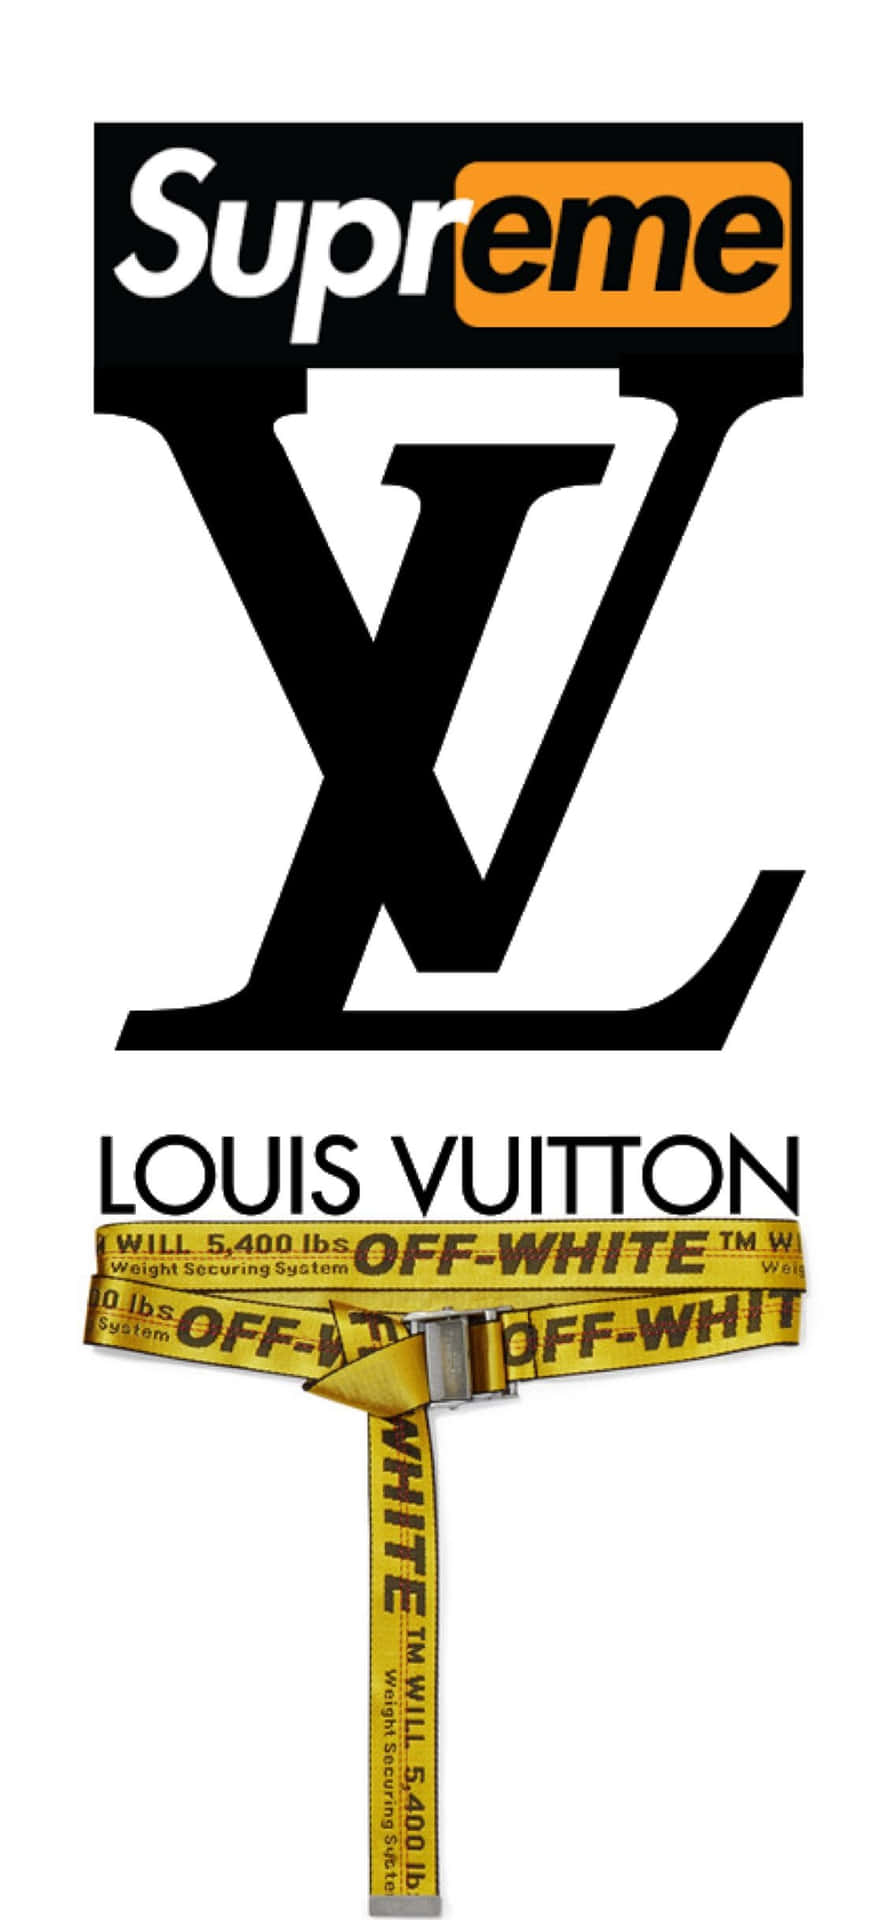 Genießensie Luxus Und Stil Mit Dem Louis Vuitton Iphone Wallpaper